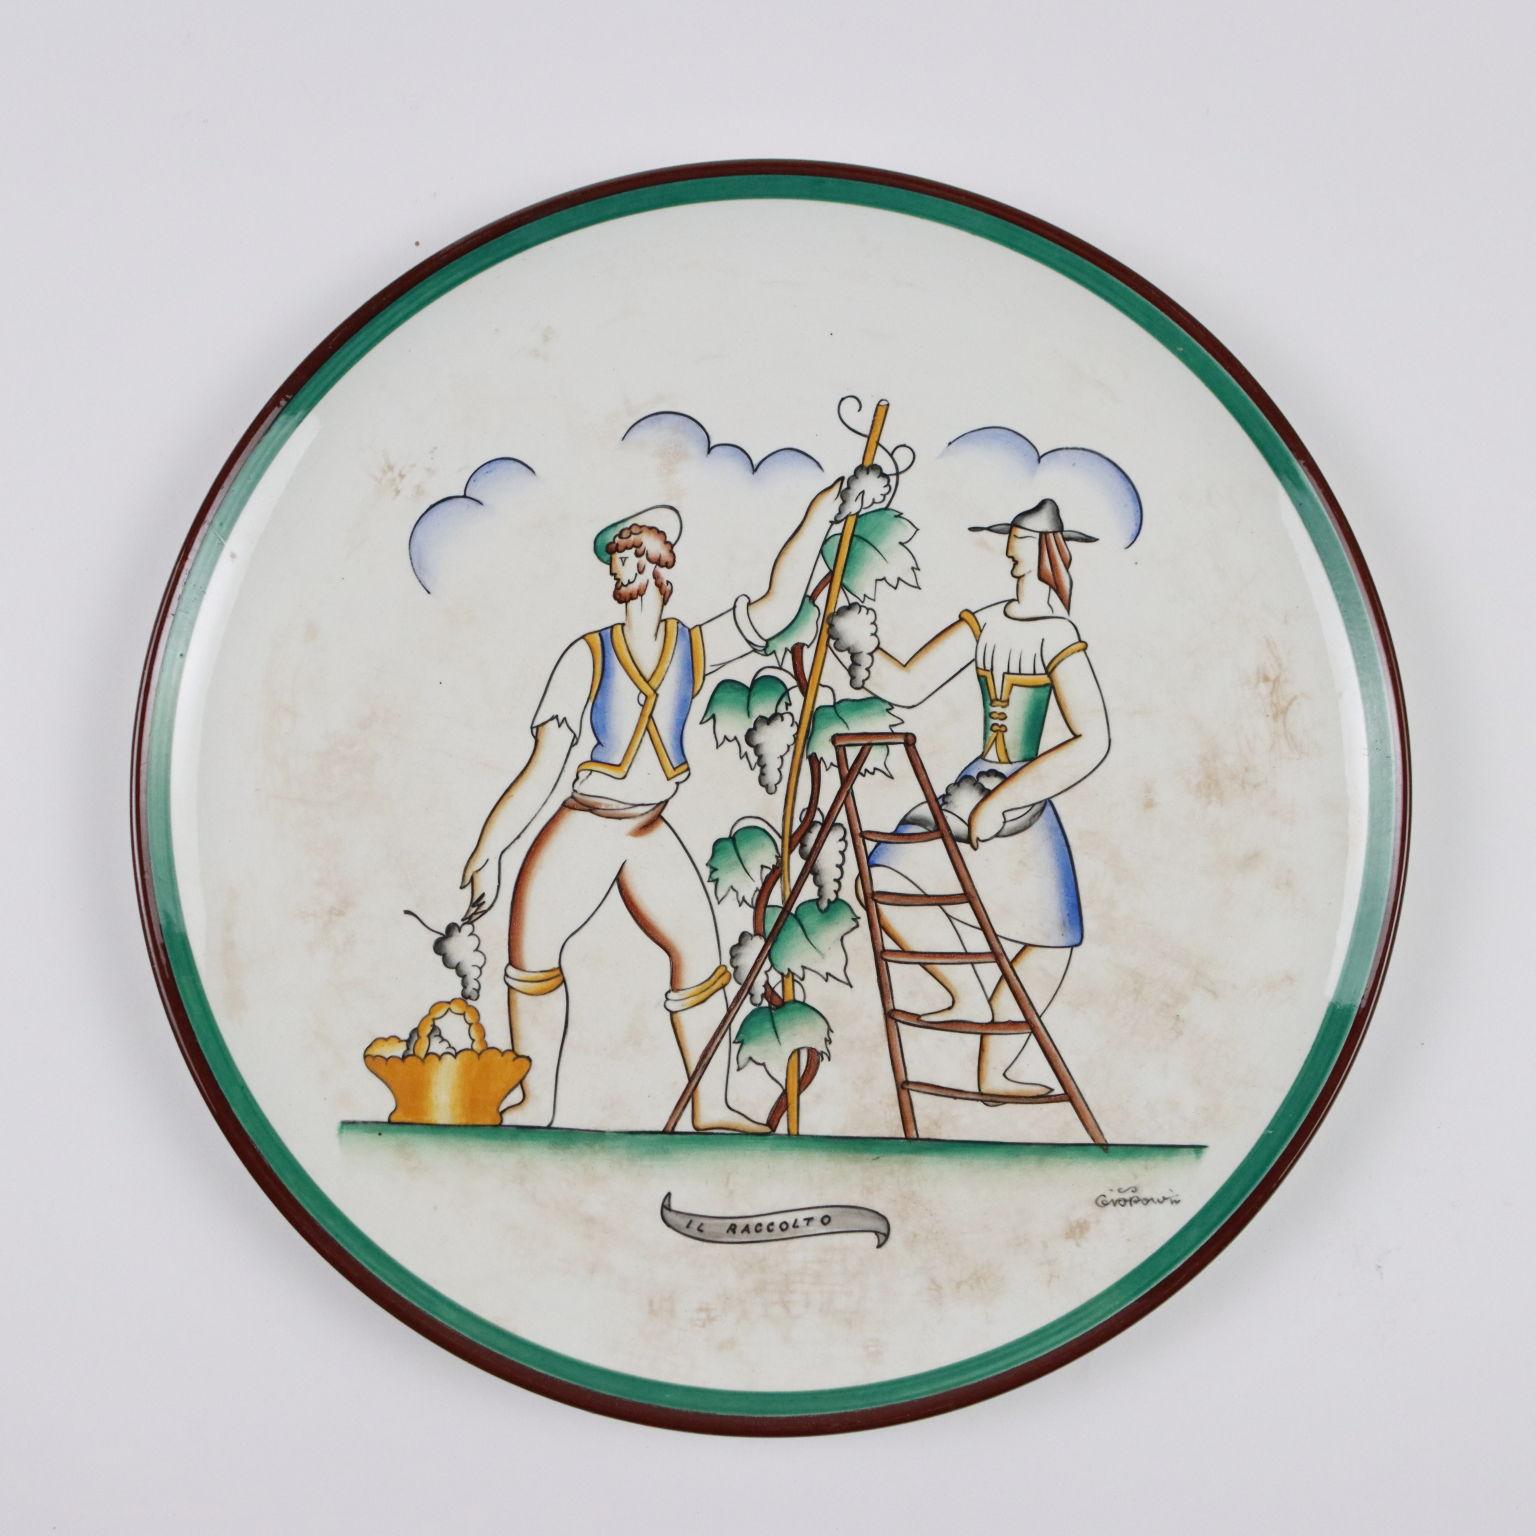 Italian Richard Ginori Plates by Gio Ponti Ceramic Italy 1920s-1930s